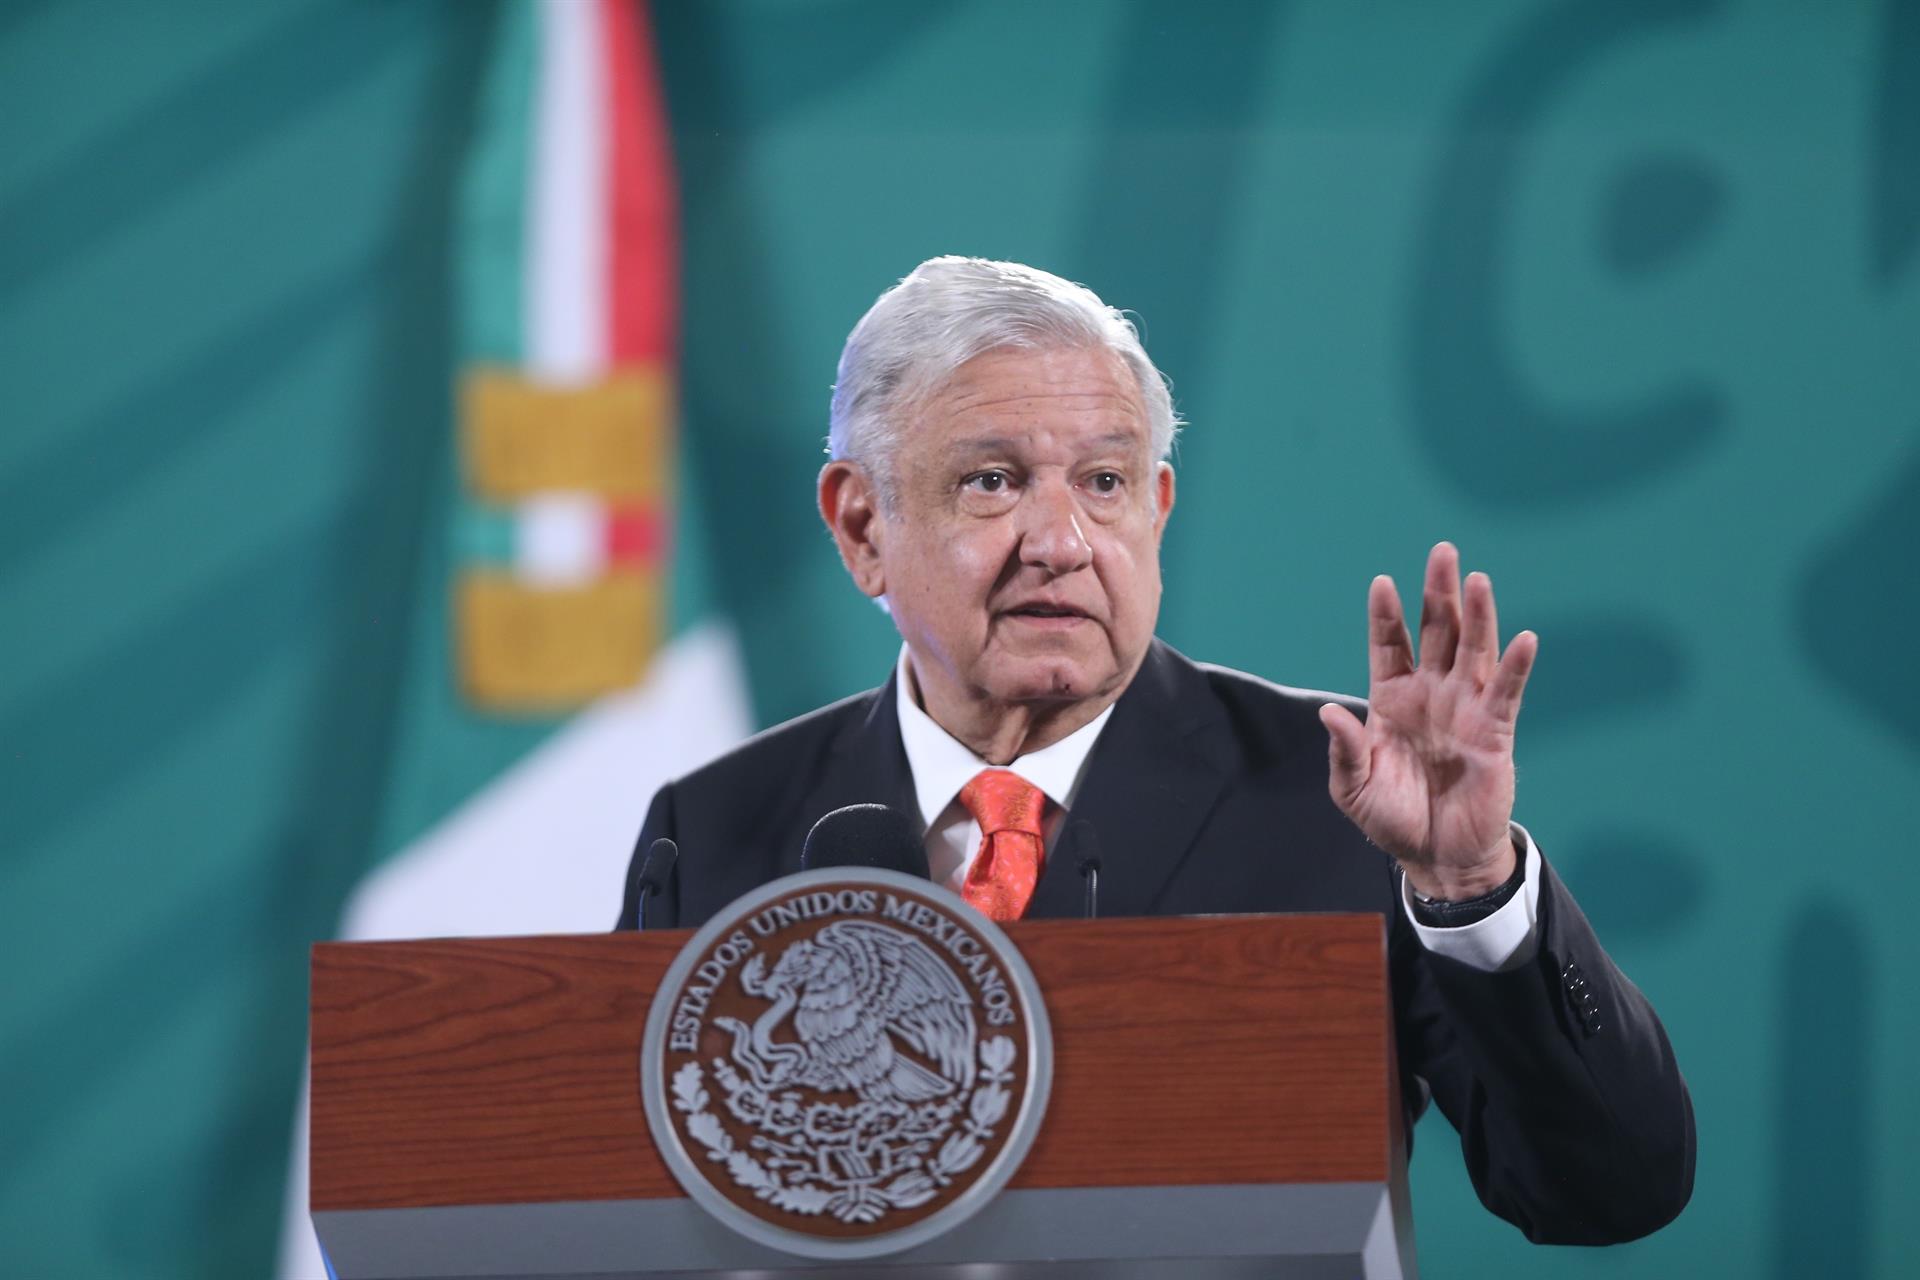 El presidente de México, Andrés Manuel López Obrador, excarcelará a adultos mayores y presos torturados. (Foto Prensa Libre: EFE)